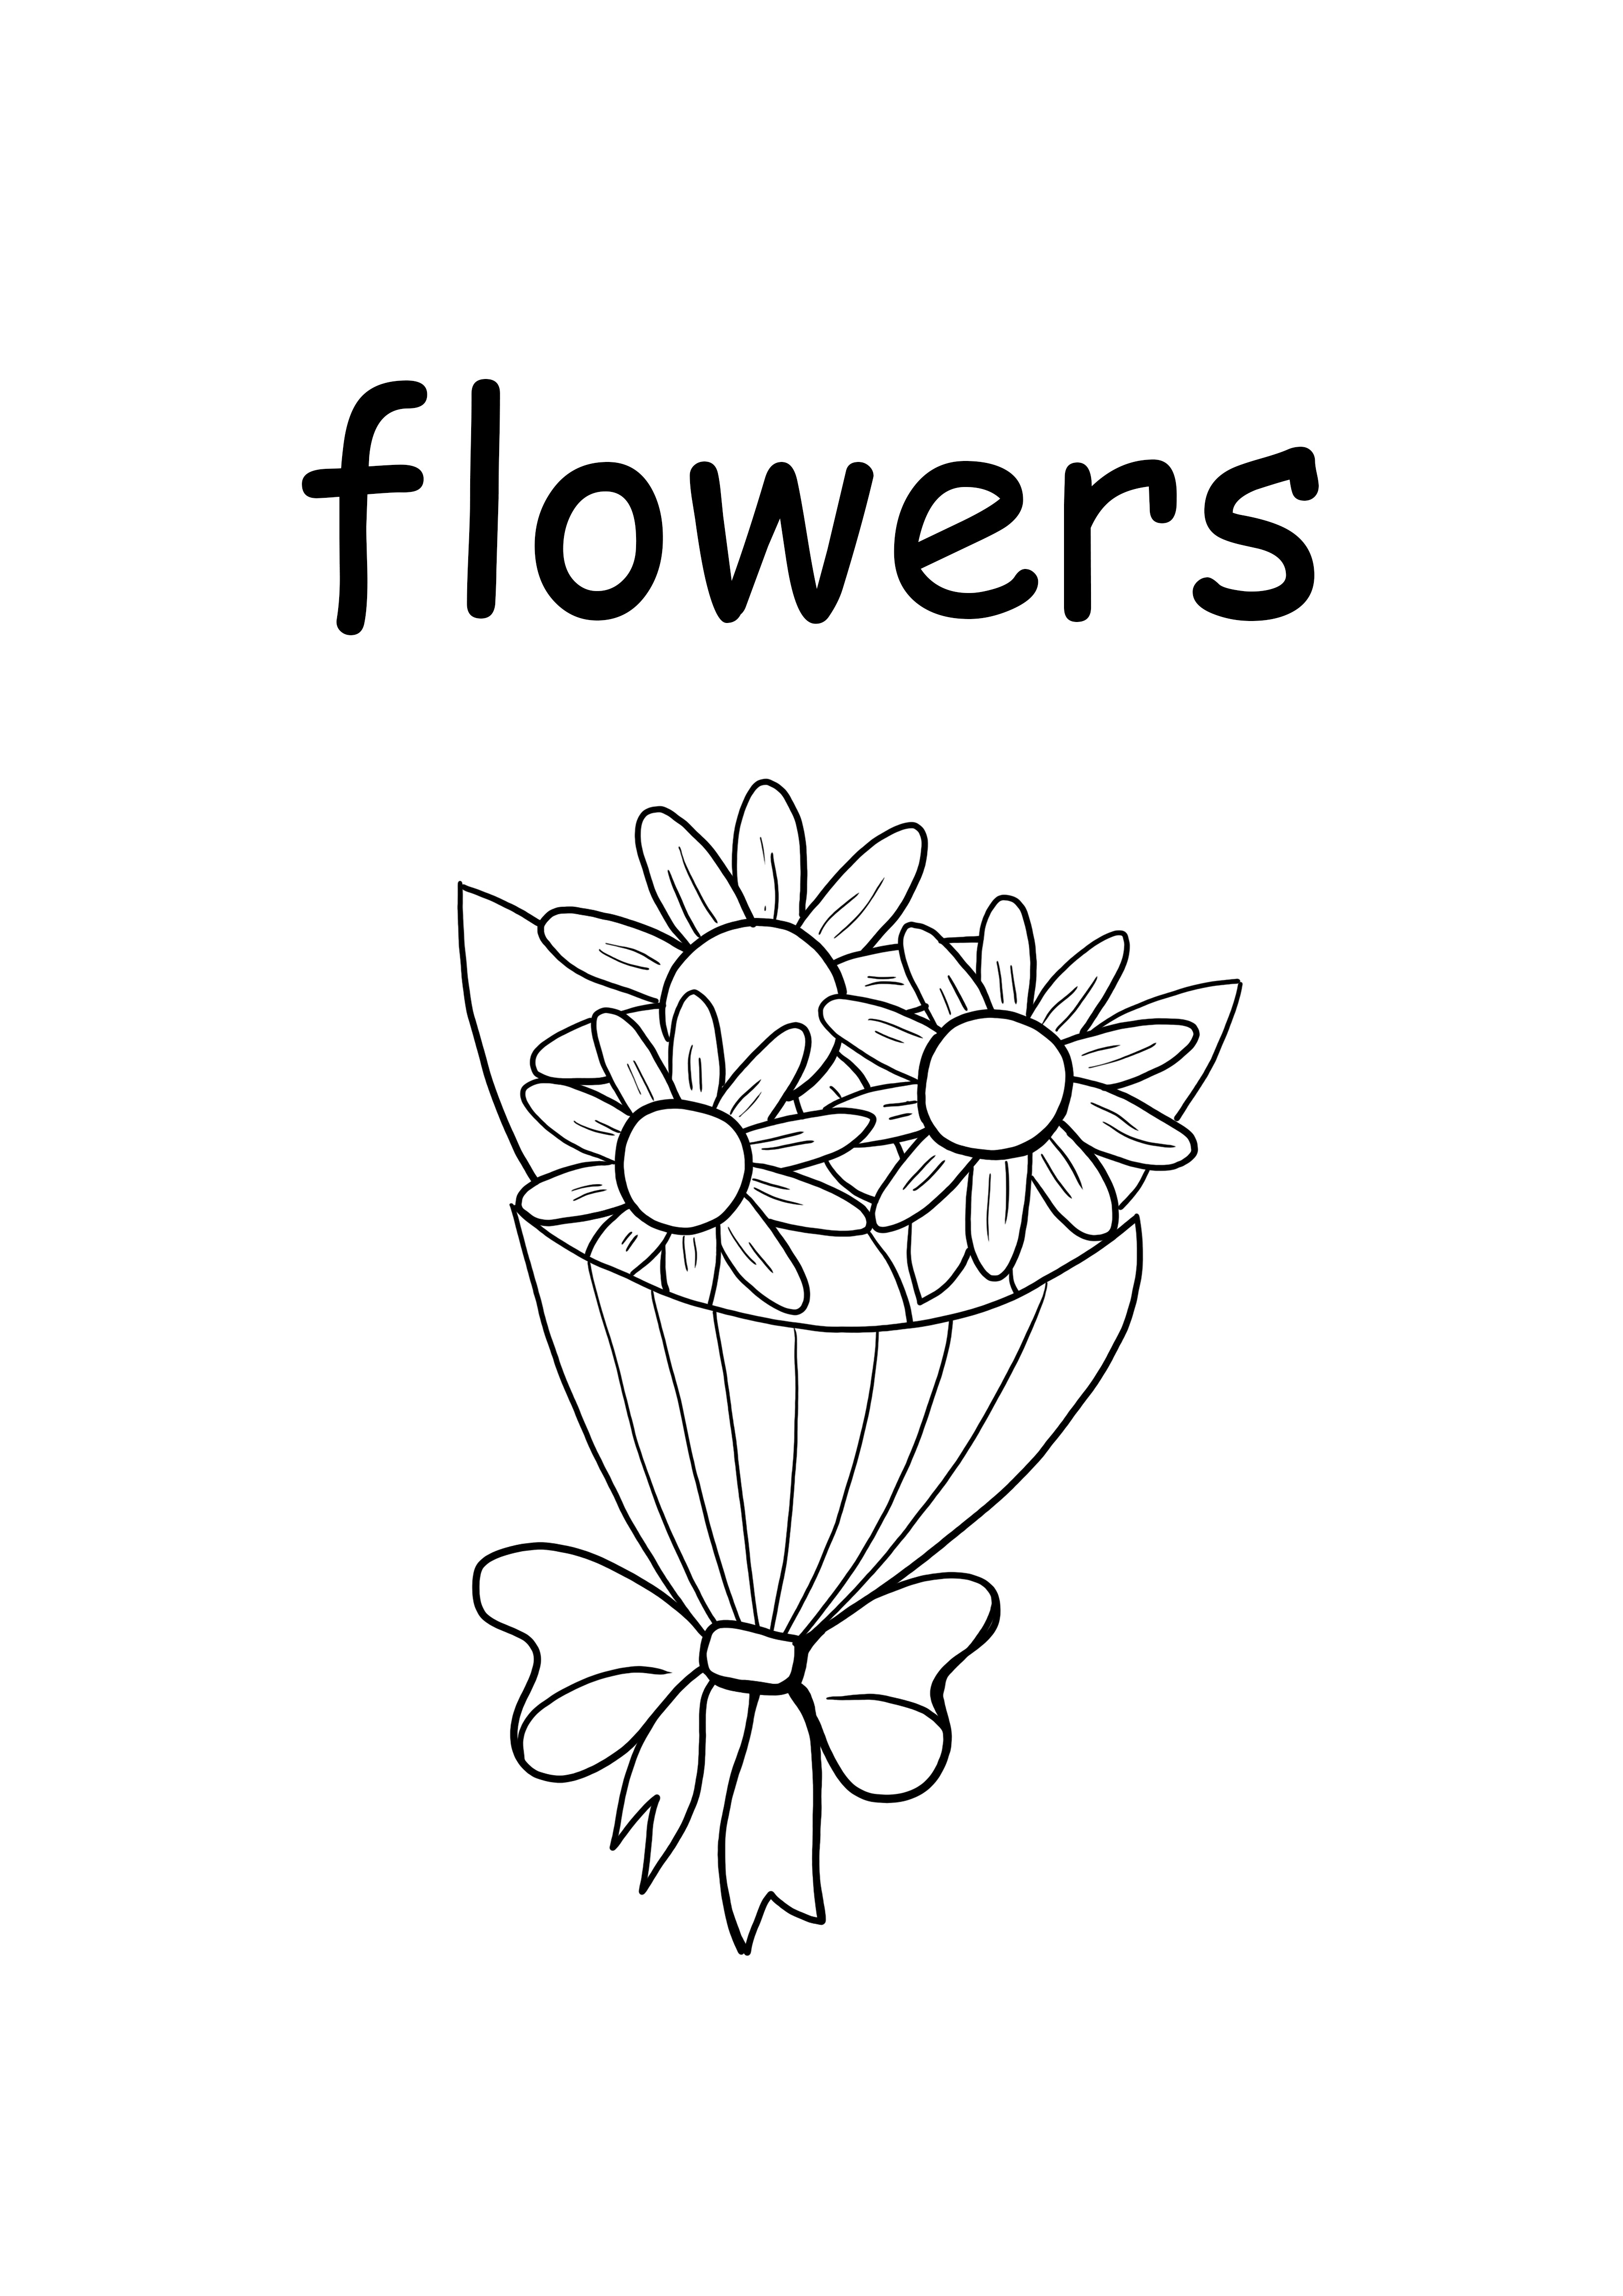 f untuk bunga kata huruf kecil gratis untuk dicetak dan halaman berwarna